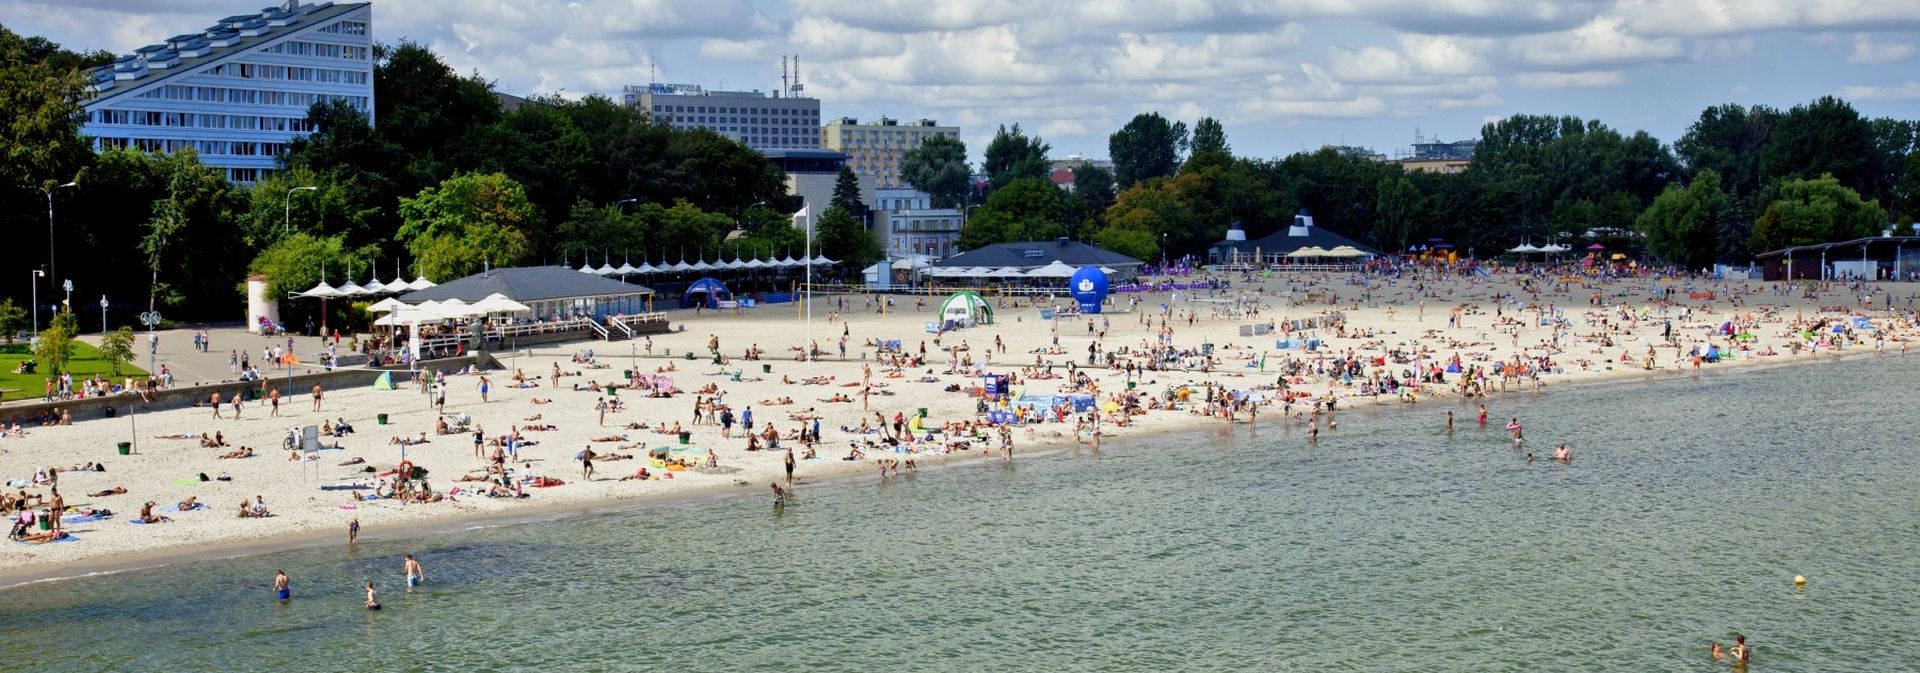 Plaża Gdynia Śródmieście 